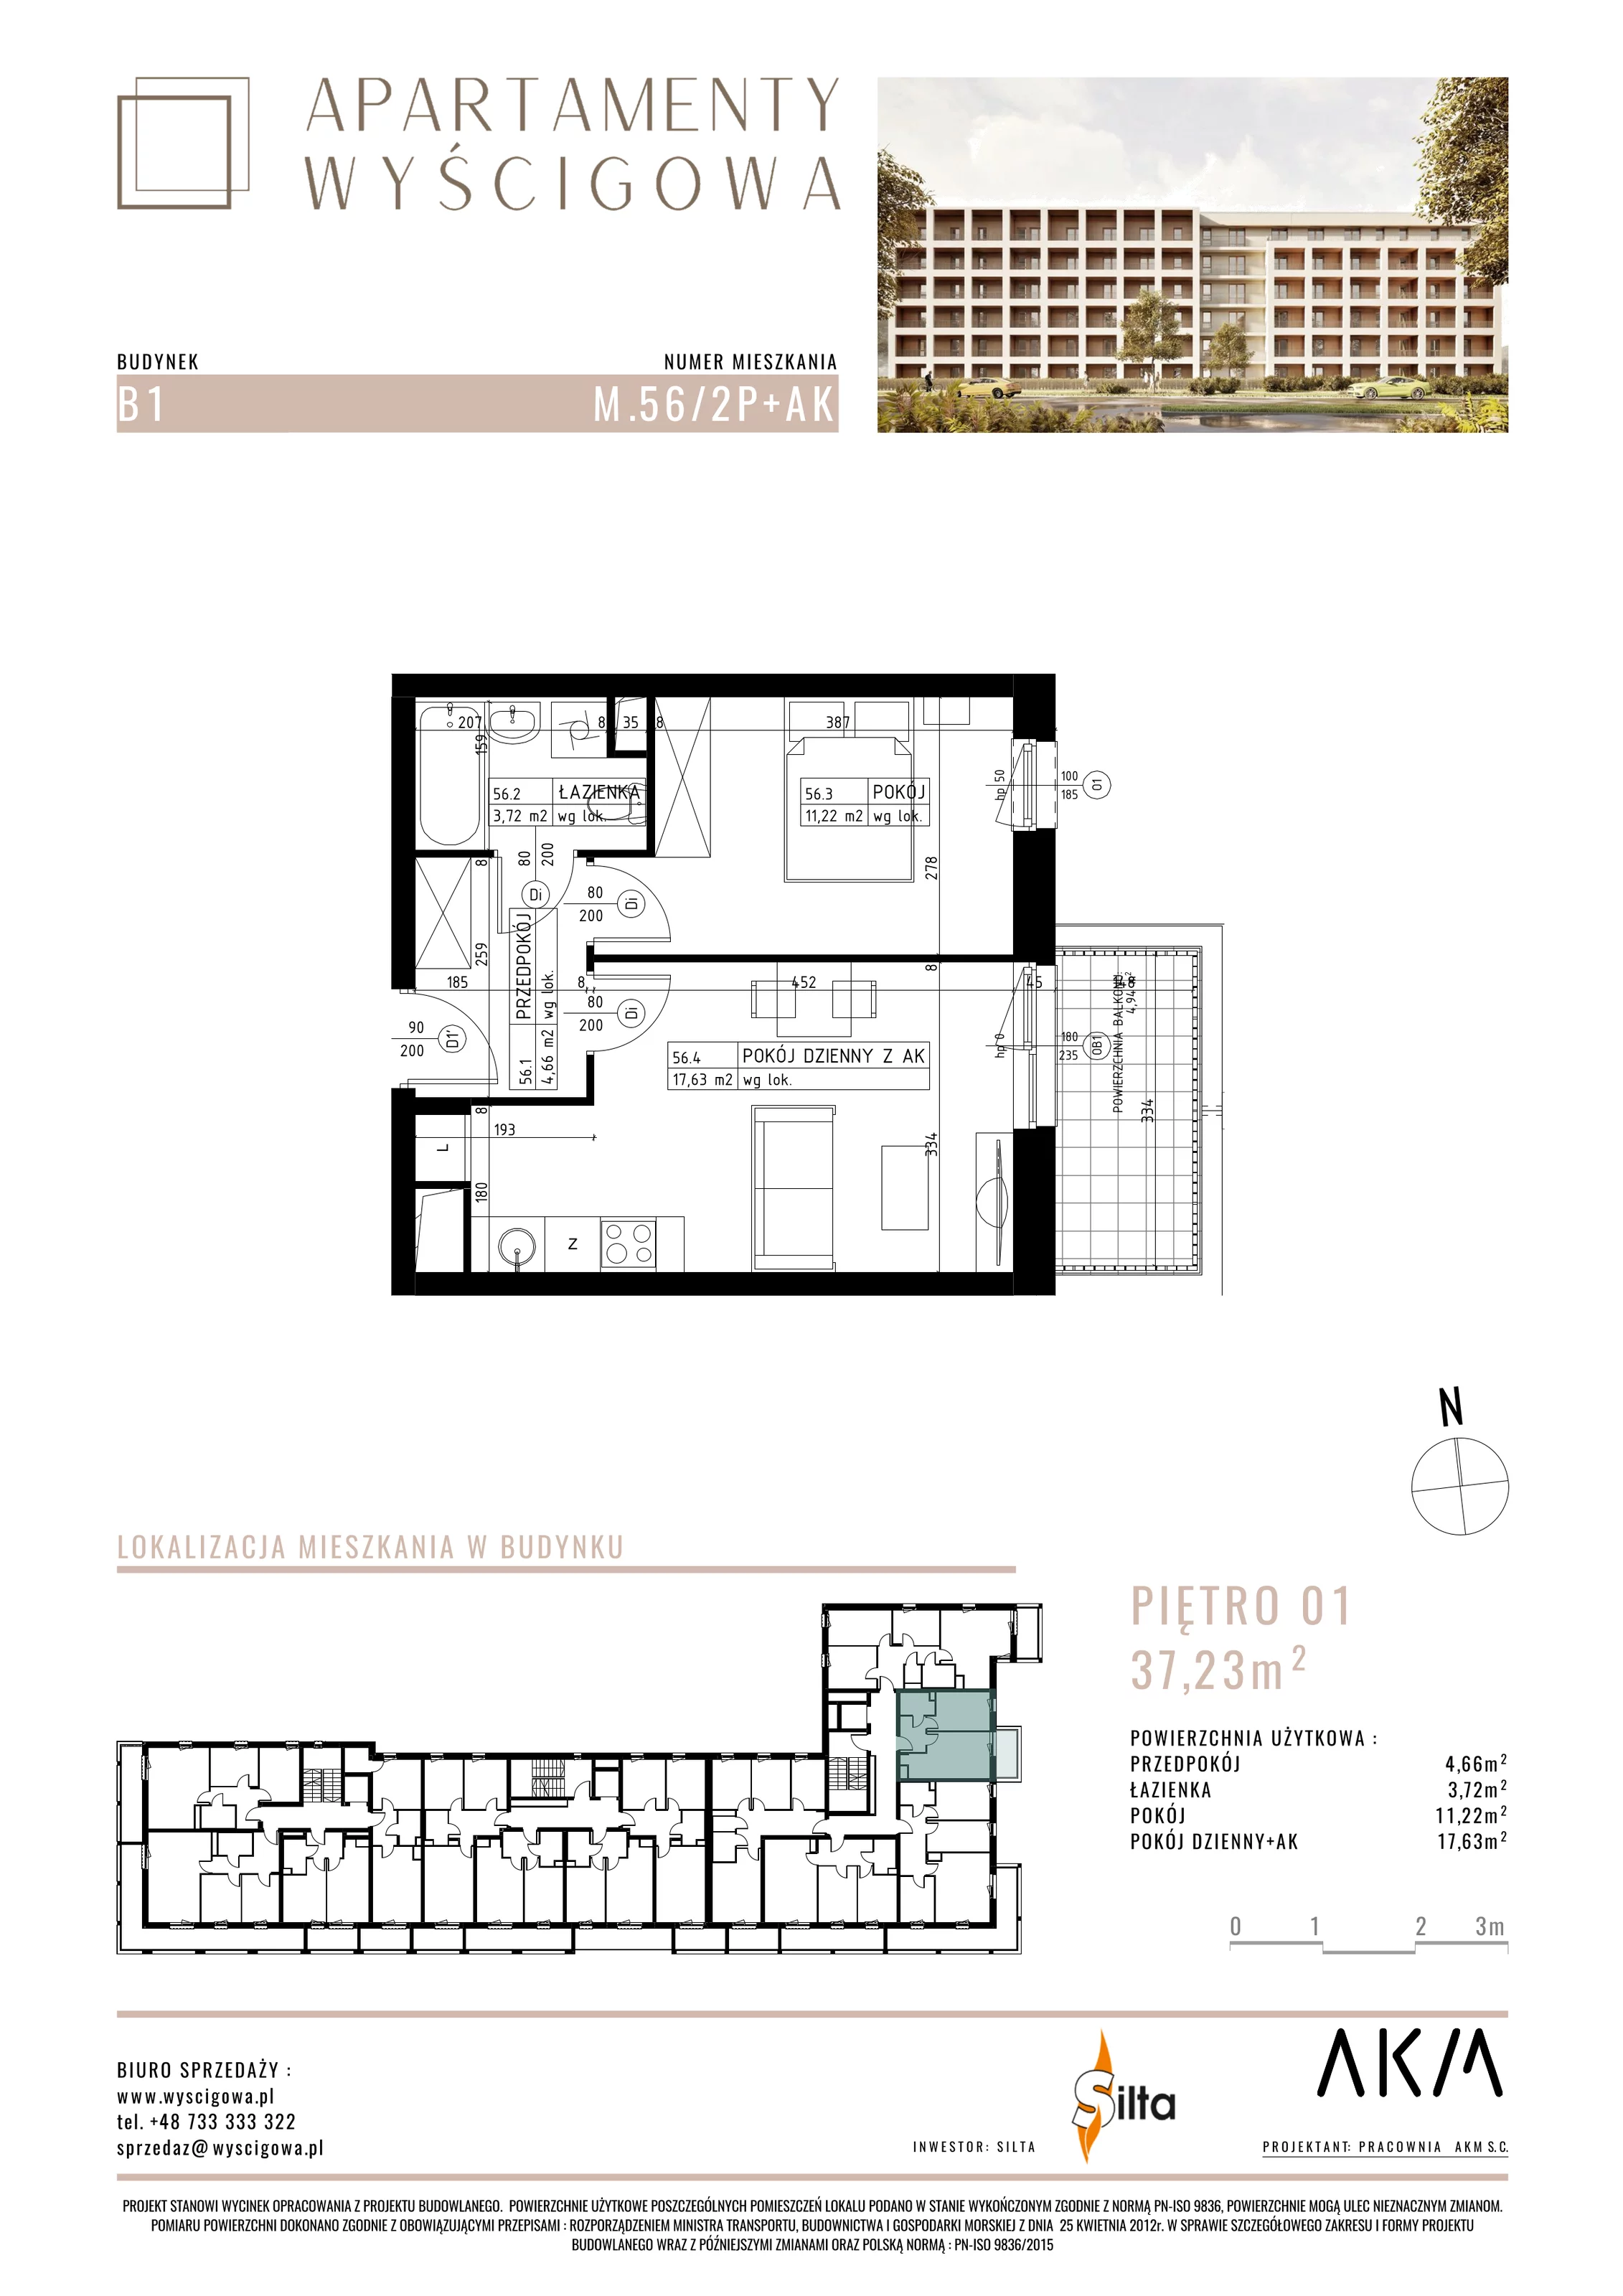 Mieszkanie 37,23 m², piętro 1, oferta nr B1.M56, Apartamenty Wyścigowa, Lublin, Dziesiąta, Dziesiąta, ul. Wyścigowa